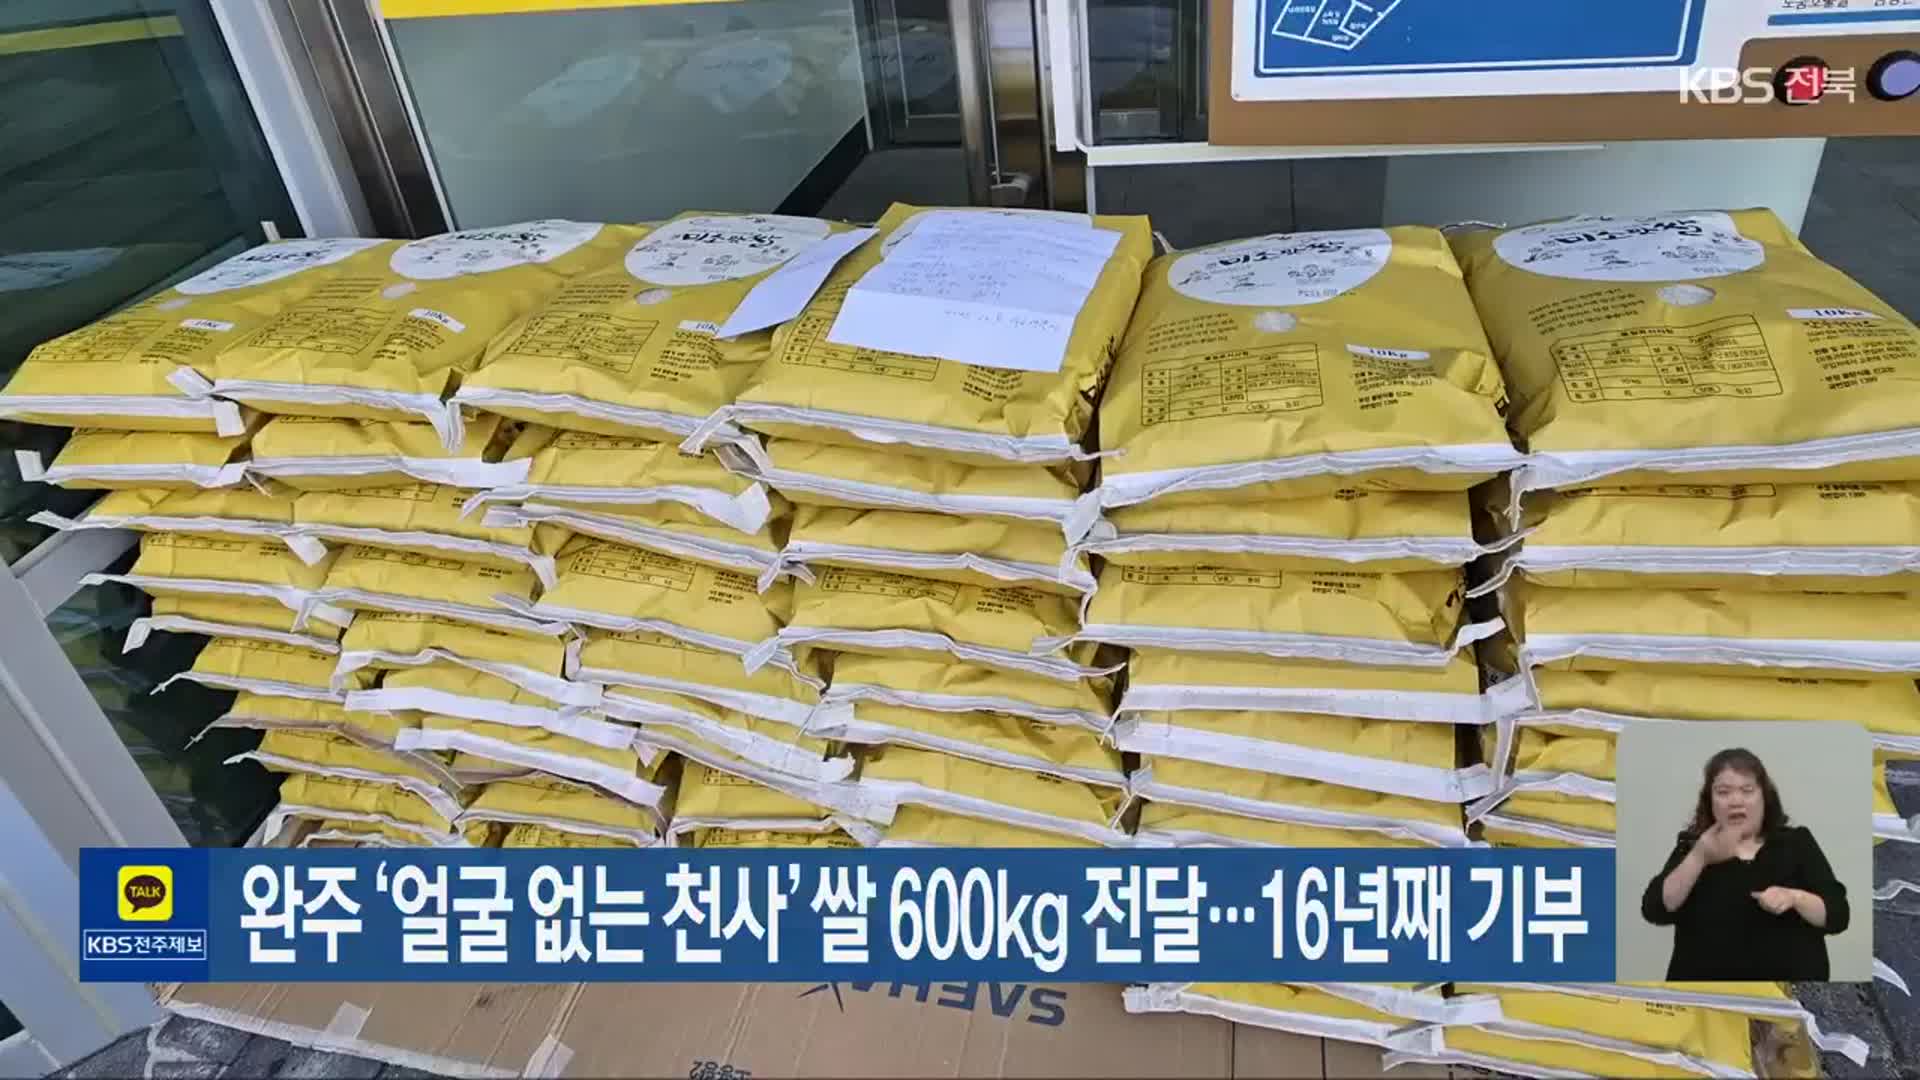 완주 ‘얼굴 없는 천사’ 쌀 600kg 전달…16년째 기부